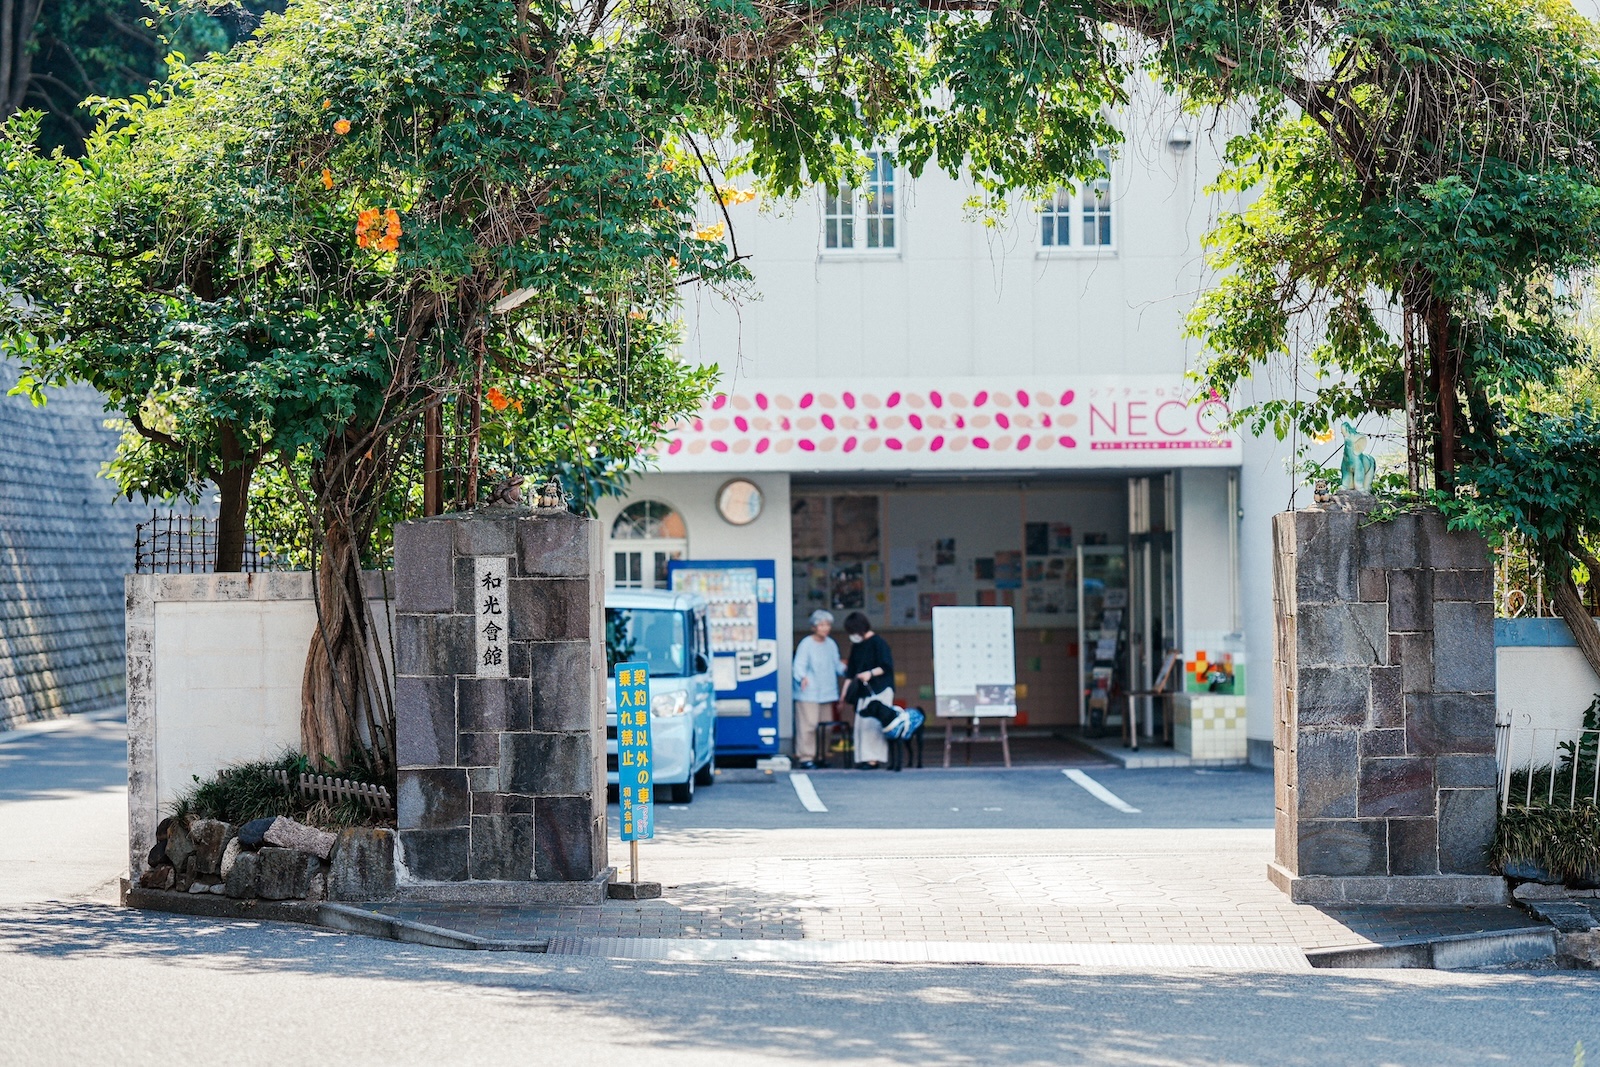 【写真】愛媛県・松山の〈和光会館〉外観。石造りの門の両脇に木が植えられ、地面に木漏れ日が映っている。門の先には駐車場と、同館に併設された、NPO法人シアターネットワークえひめが運営する〈シアターねこ〉の玄関口がある。